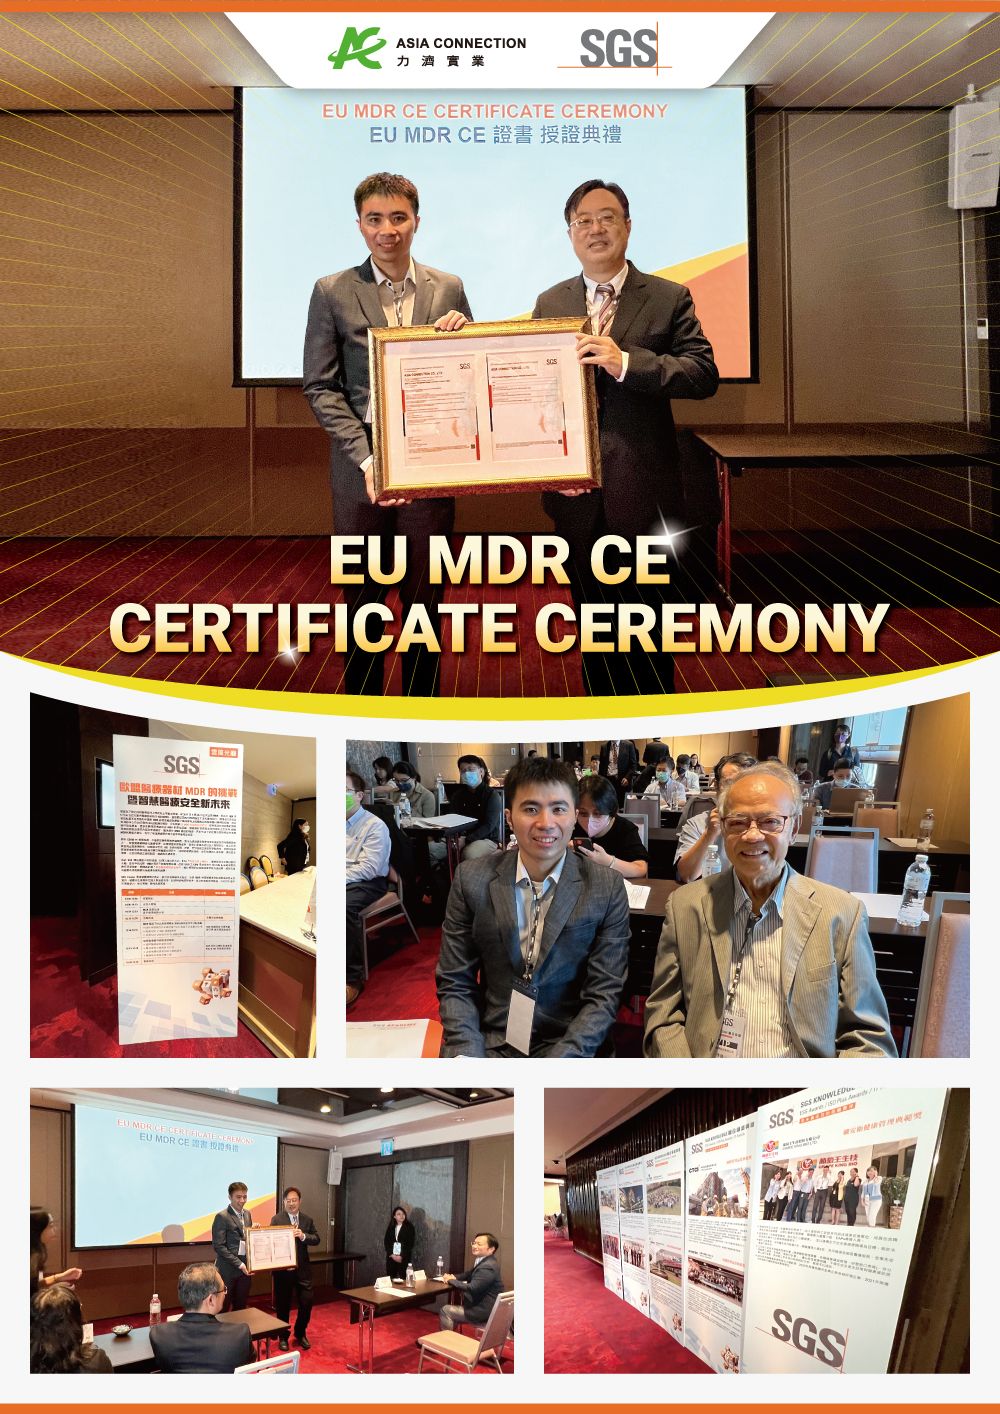 Le ME8202X- Aspirateur Nasal Alimenté de Asia Connection Obtient la Certification CE Conformément au Règlement sur les Dispositifs Médicaux (MDR) de l'UE 2017/745